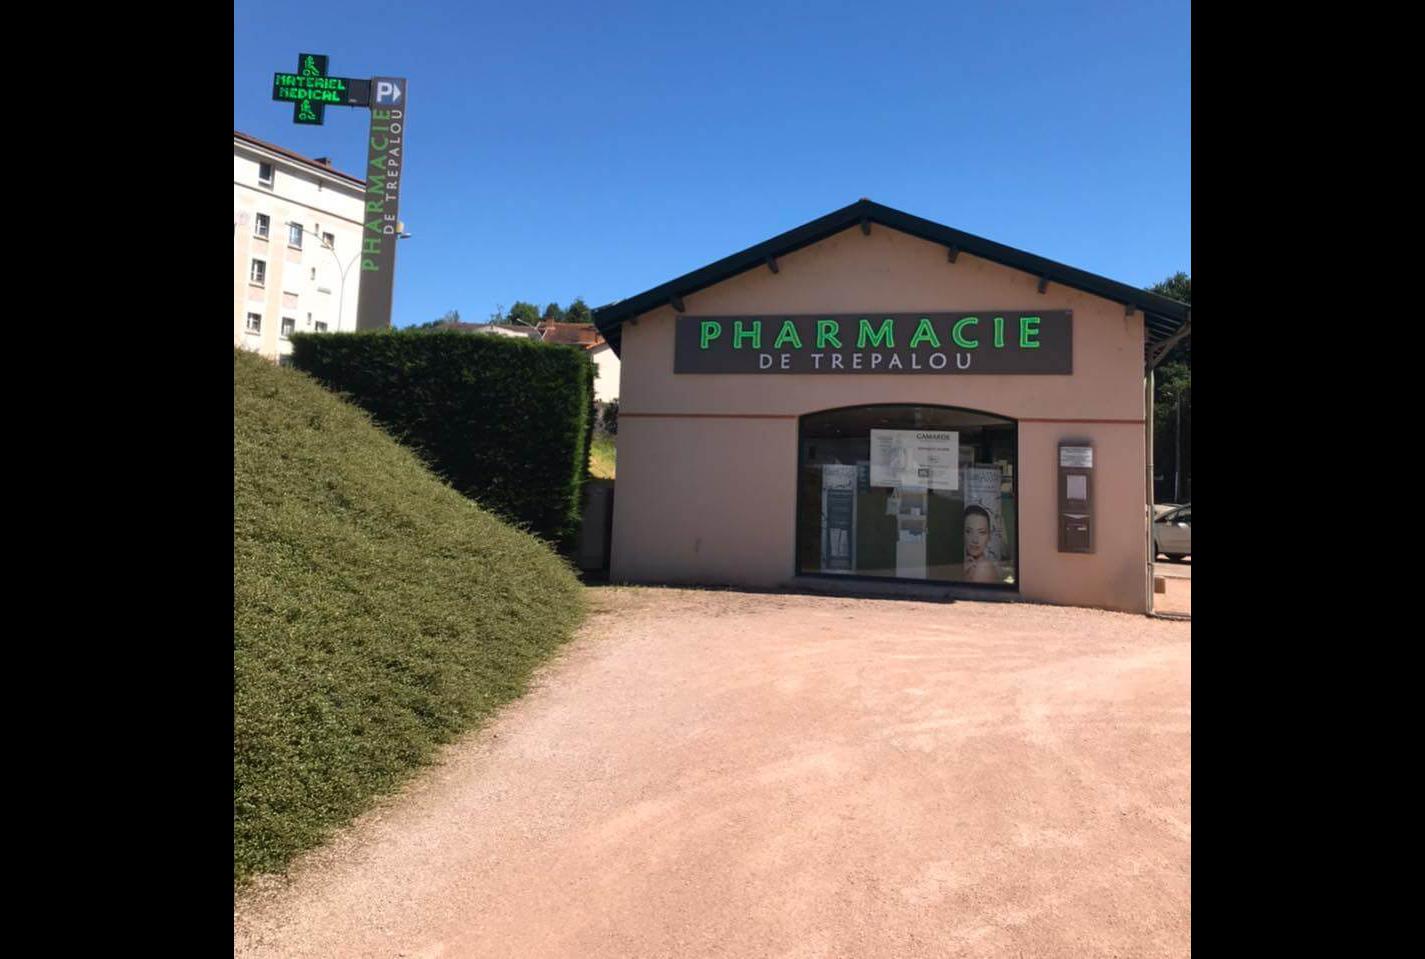 Magasin Pharmacie de Trepalou - Decazeville (12300) Visuel 1